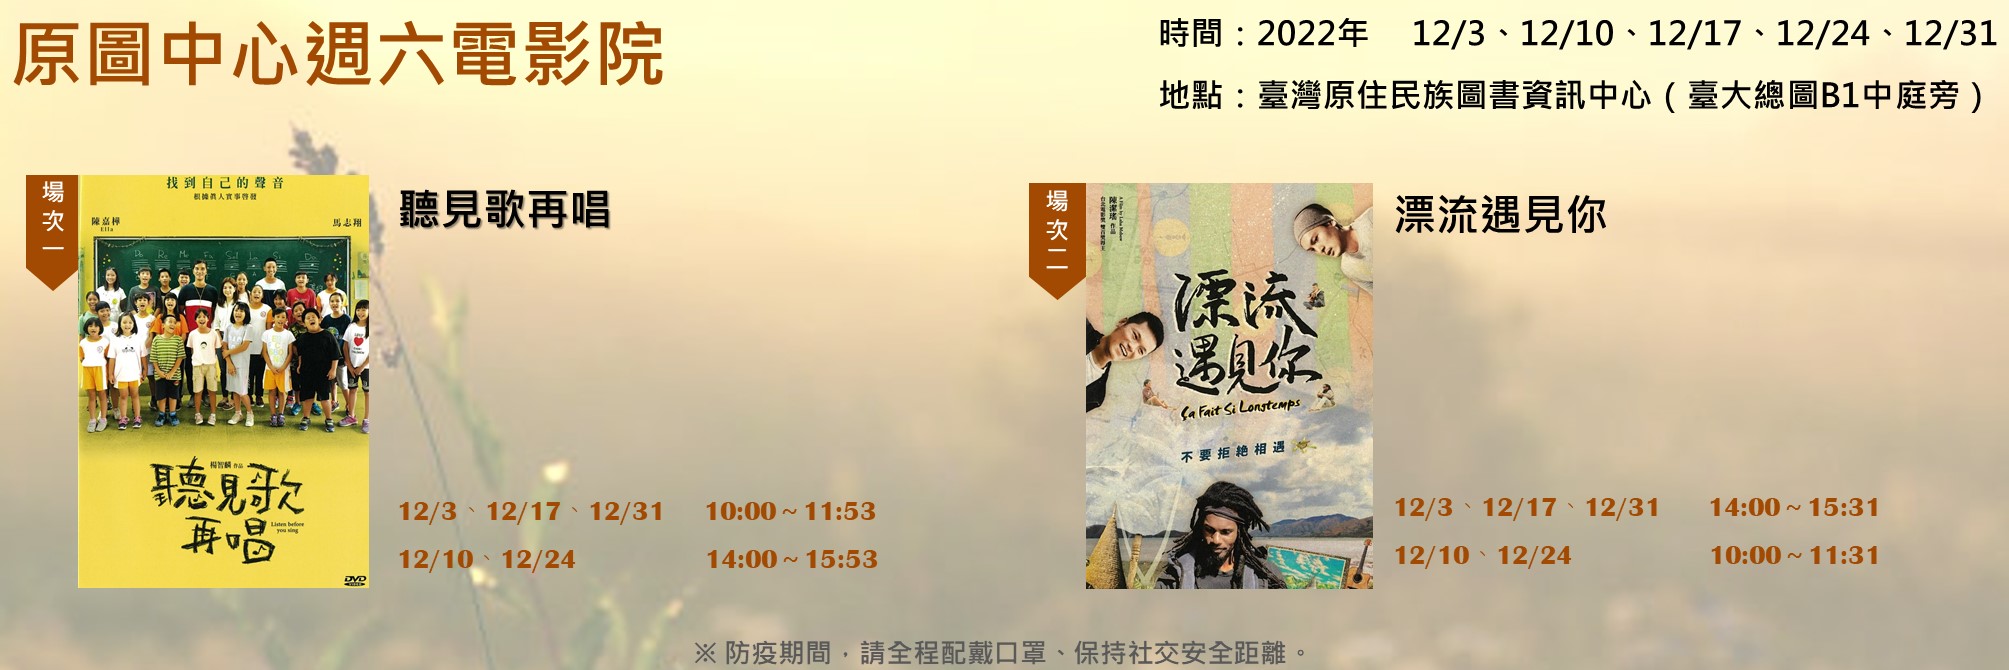 【活動】2022原圖中心12月週六電影院